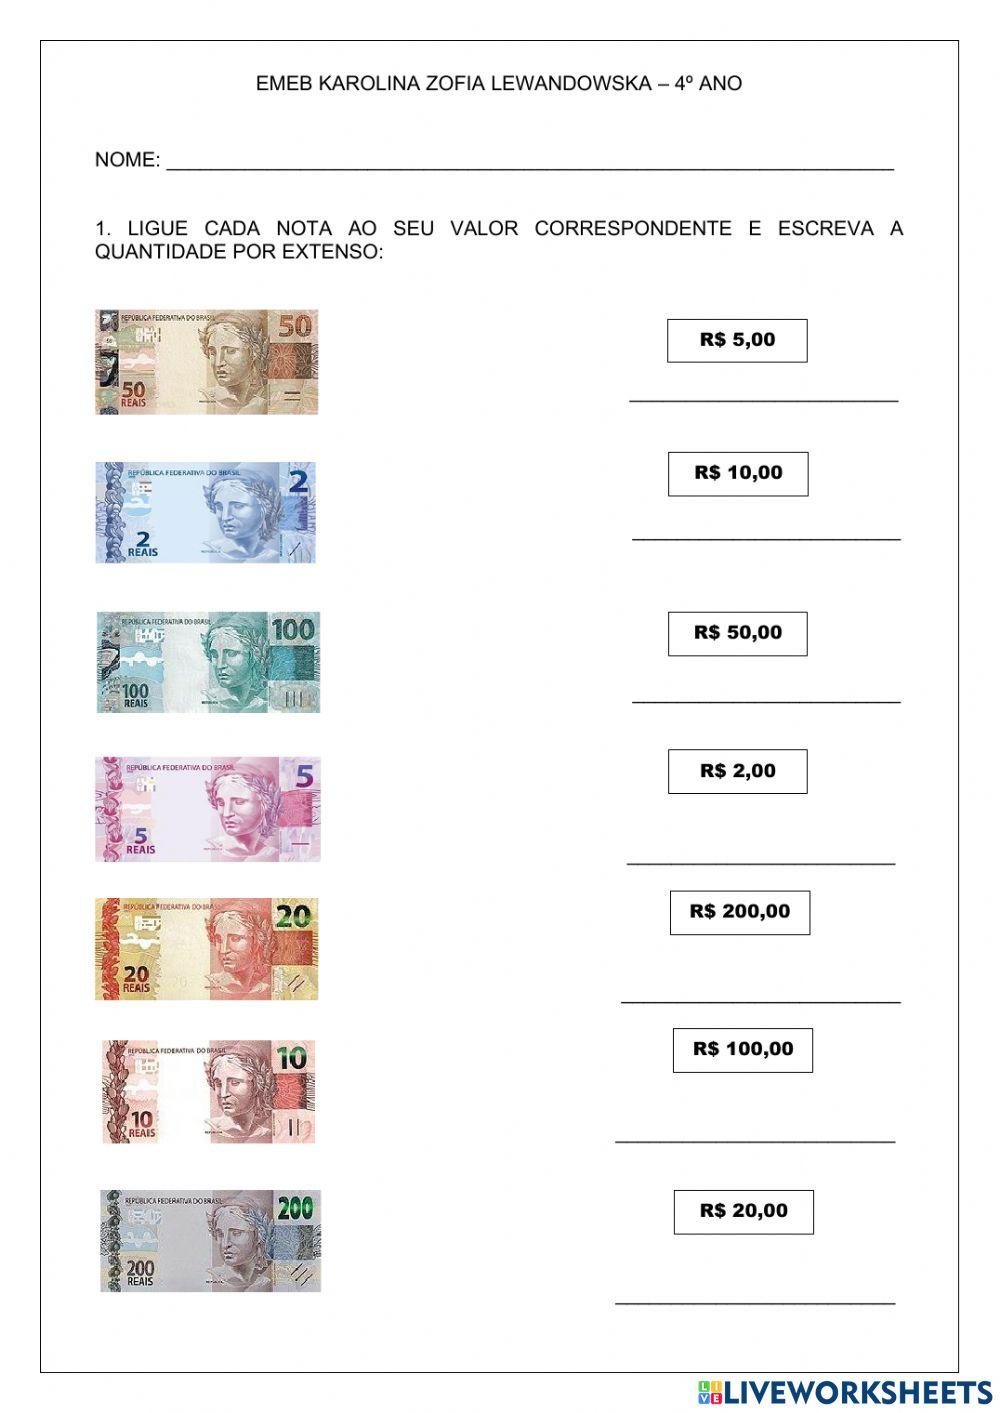 Sistema Monetário Brasileiro